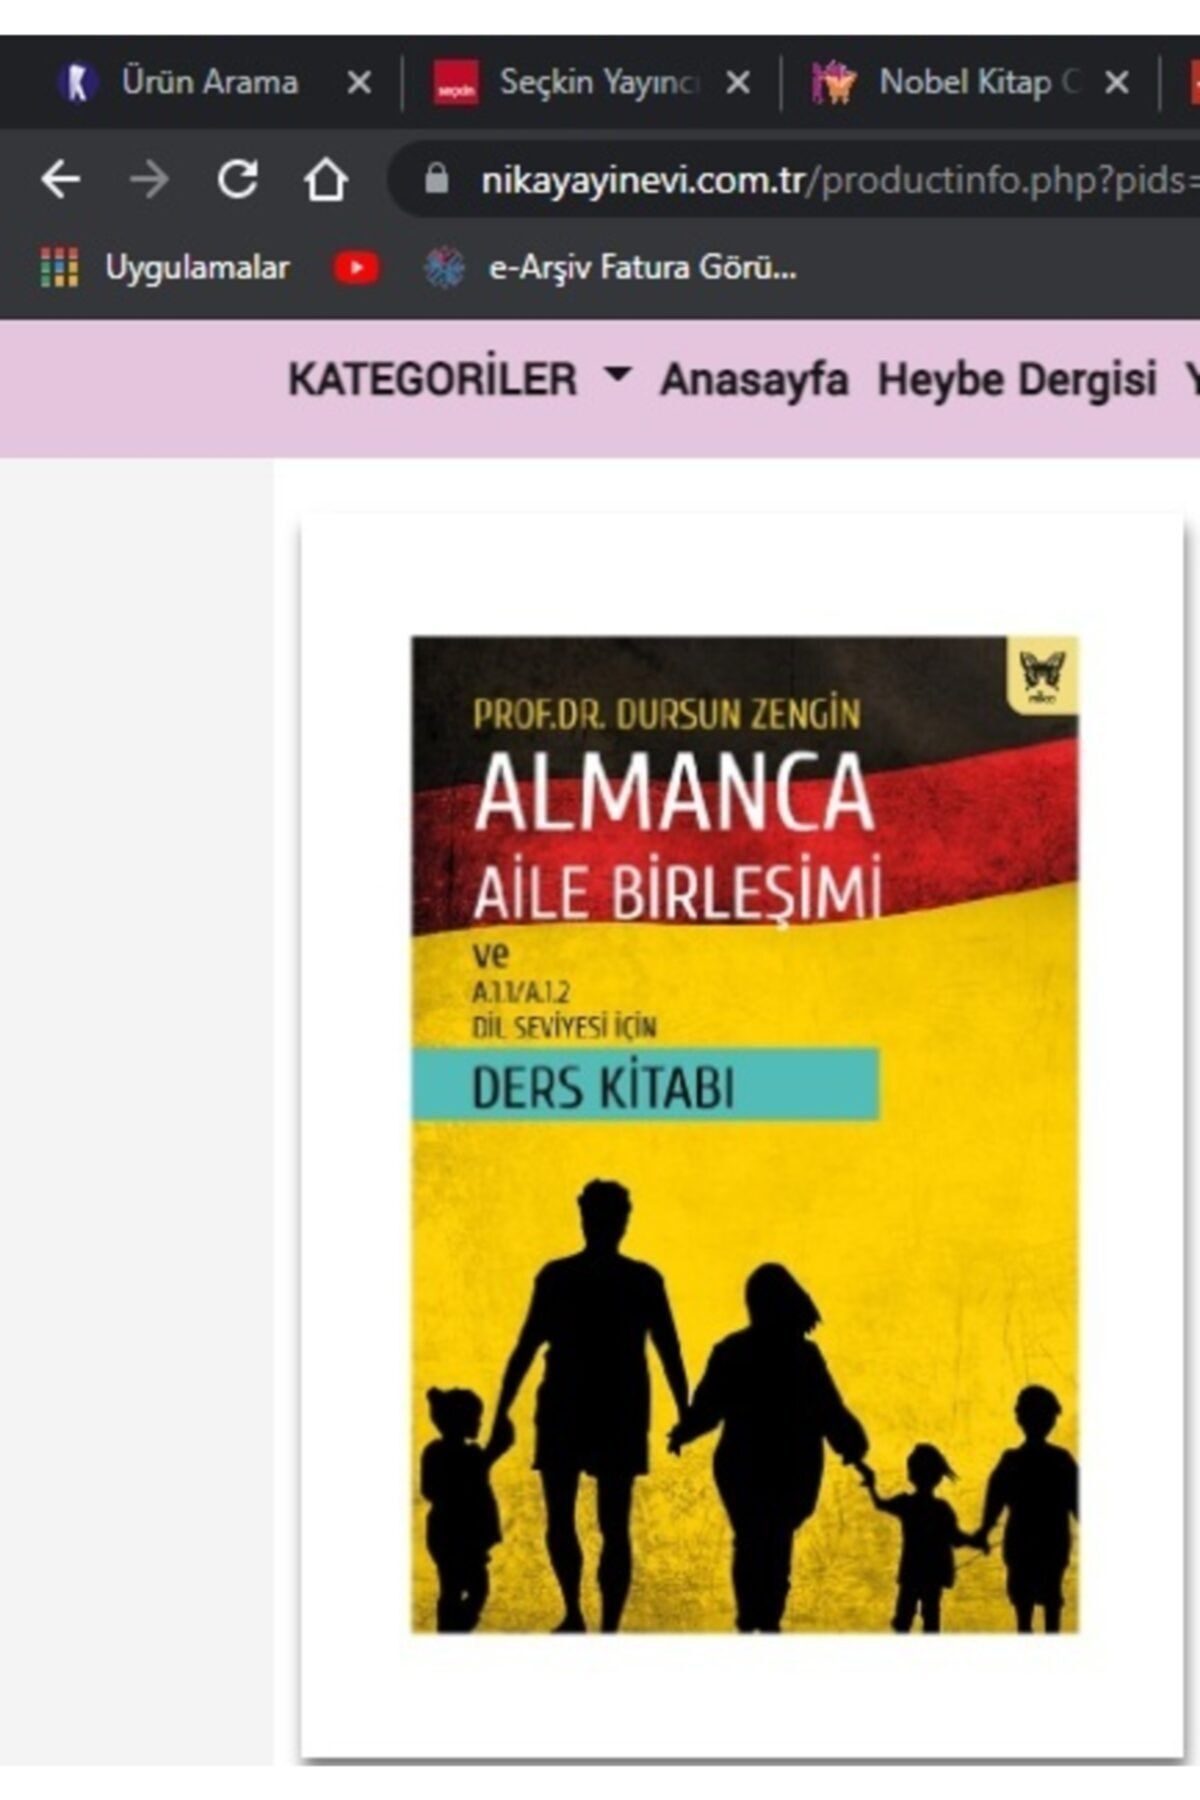 Nika Yayınevi Almanca Aile Birleşimi Ve A.1.1/a.1.2 Dil Seviyesi Için Ders Kitabı - Dursun Zengin